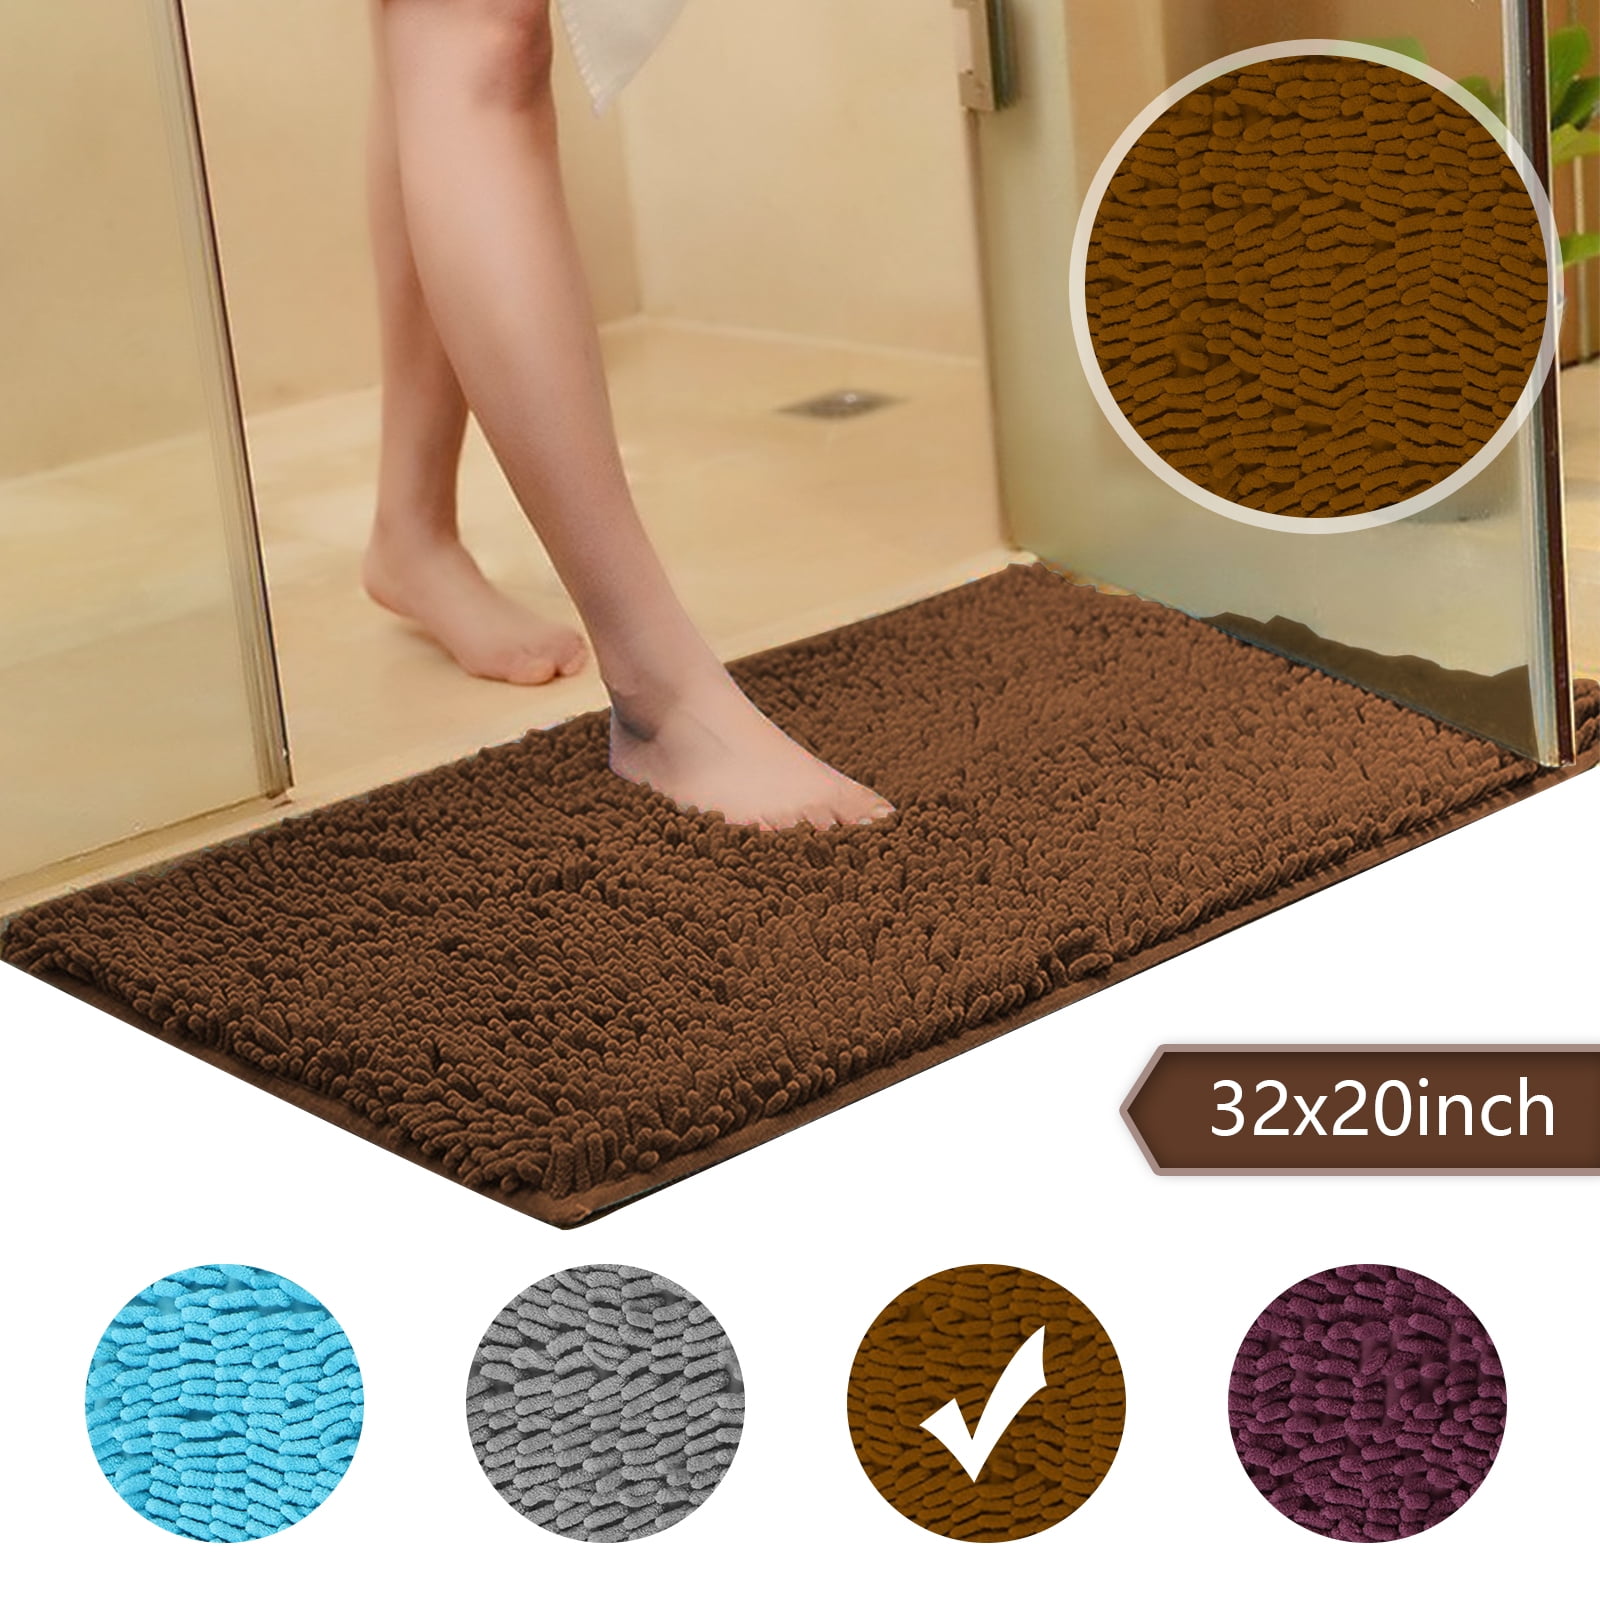 2020 New absorbent Soft Bedroom Bathroom Floor Non-slip Door Bath Mat Shower Rug 